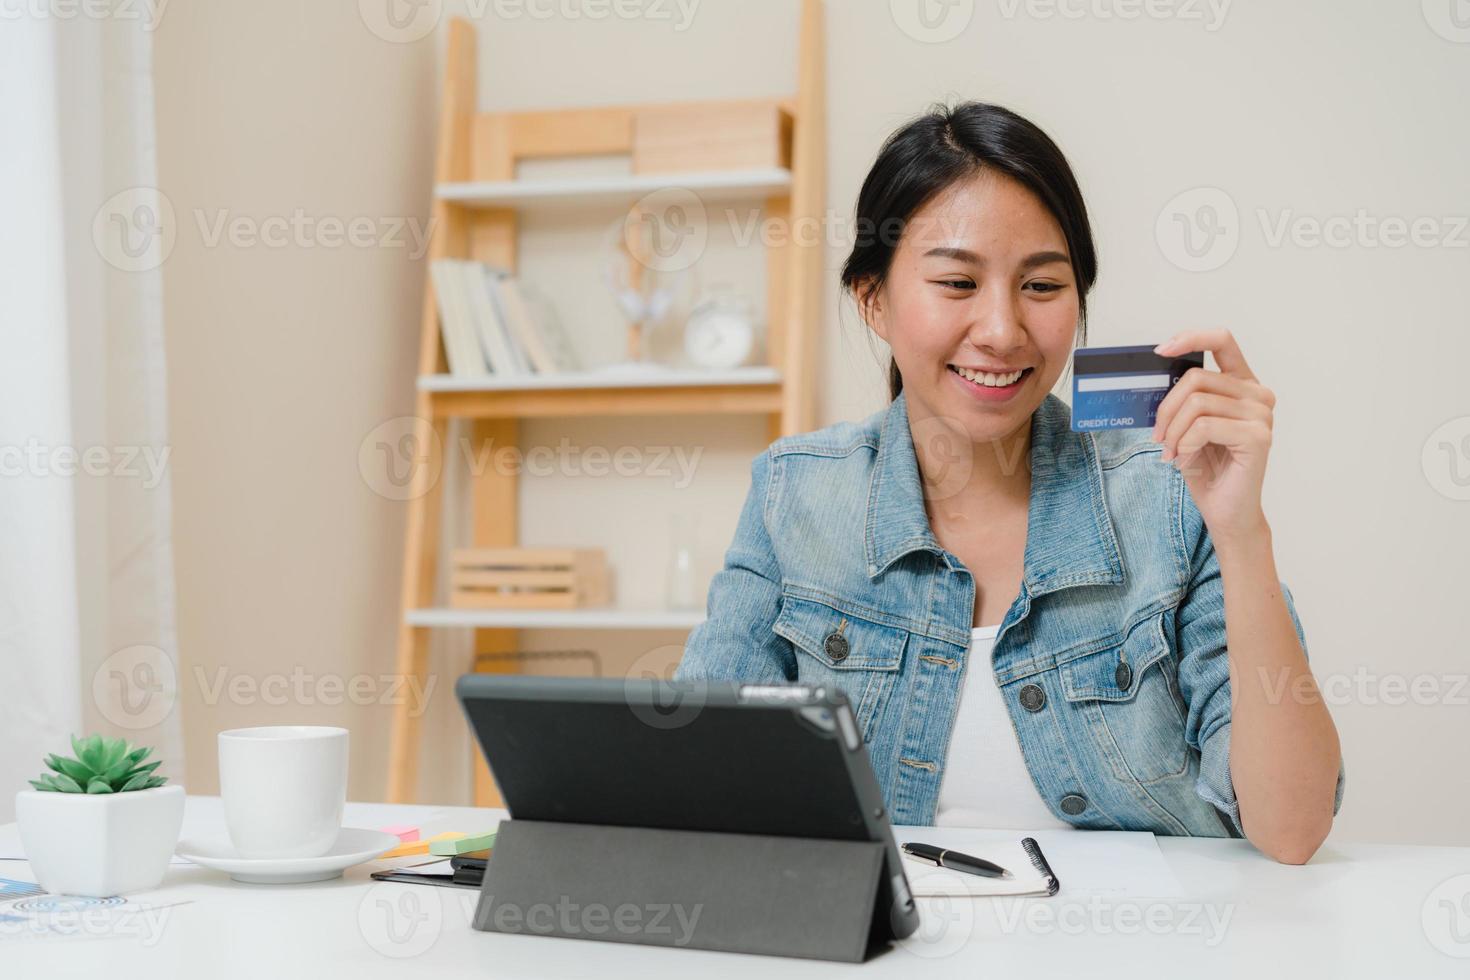 mooie slimme zakelijke aziatische vrouw die tablet gebruikt om online winkelen met een creditcard te kopen terwijl ze smart casual op een bureau in de woonkamer thuis zit. levensstijl vrouw die thuis werkt concept. foto